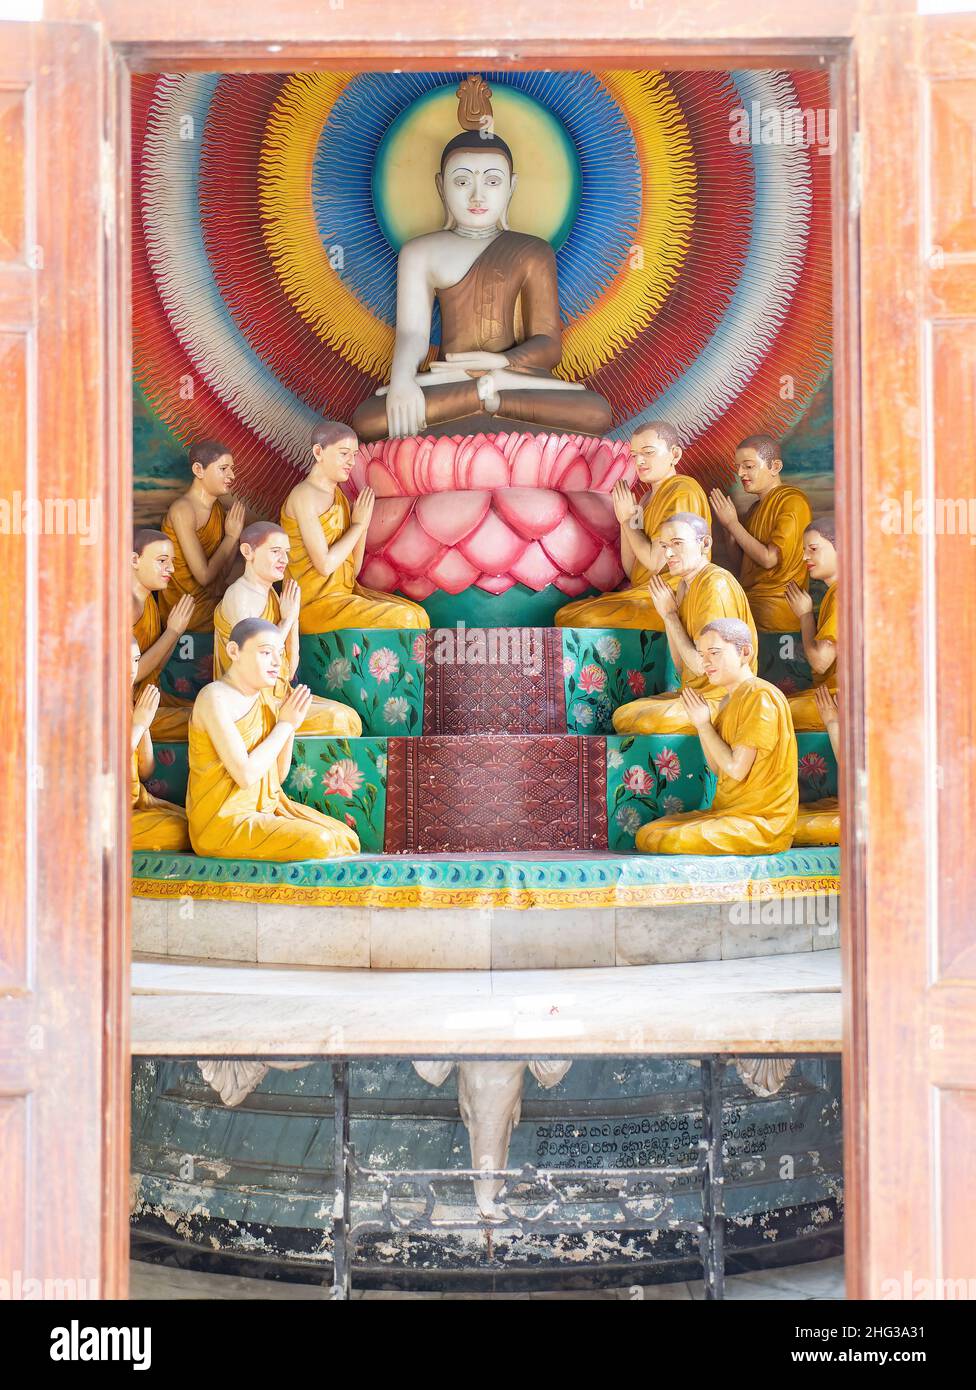 Diorama montrant le Bouddha assis entouré de ses disciples au Temple bouddhiste d'Asokaramaya, Colombo, Sri Lanka, entouré de disciples. Banque D'Images